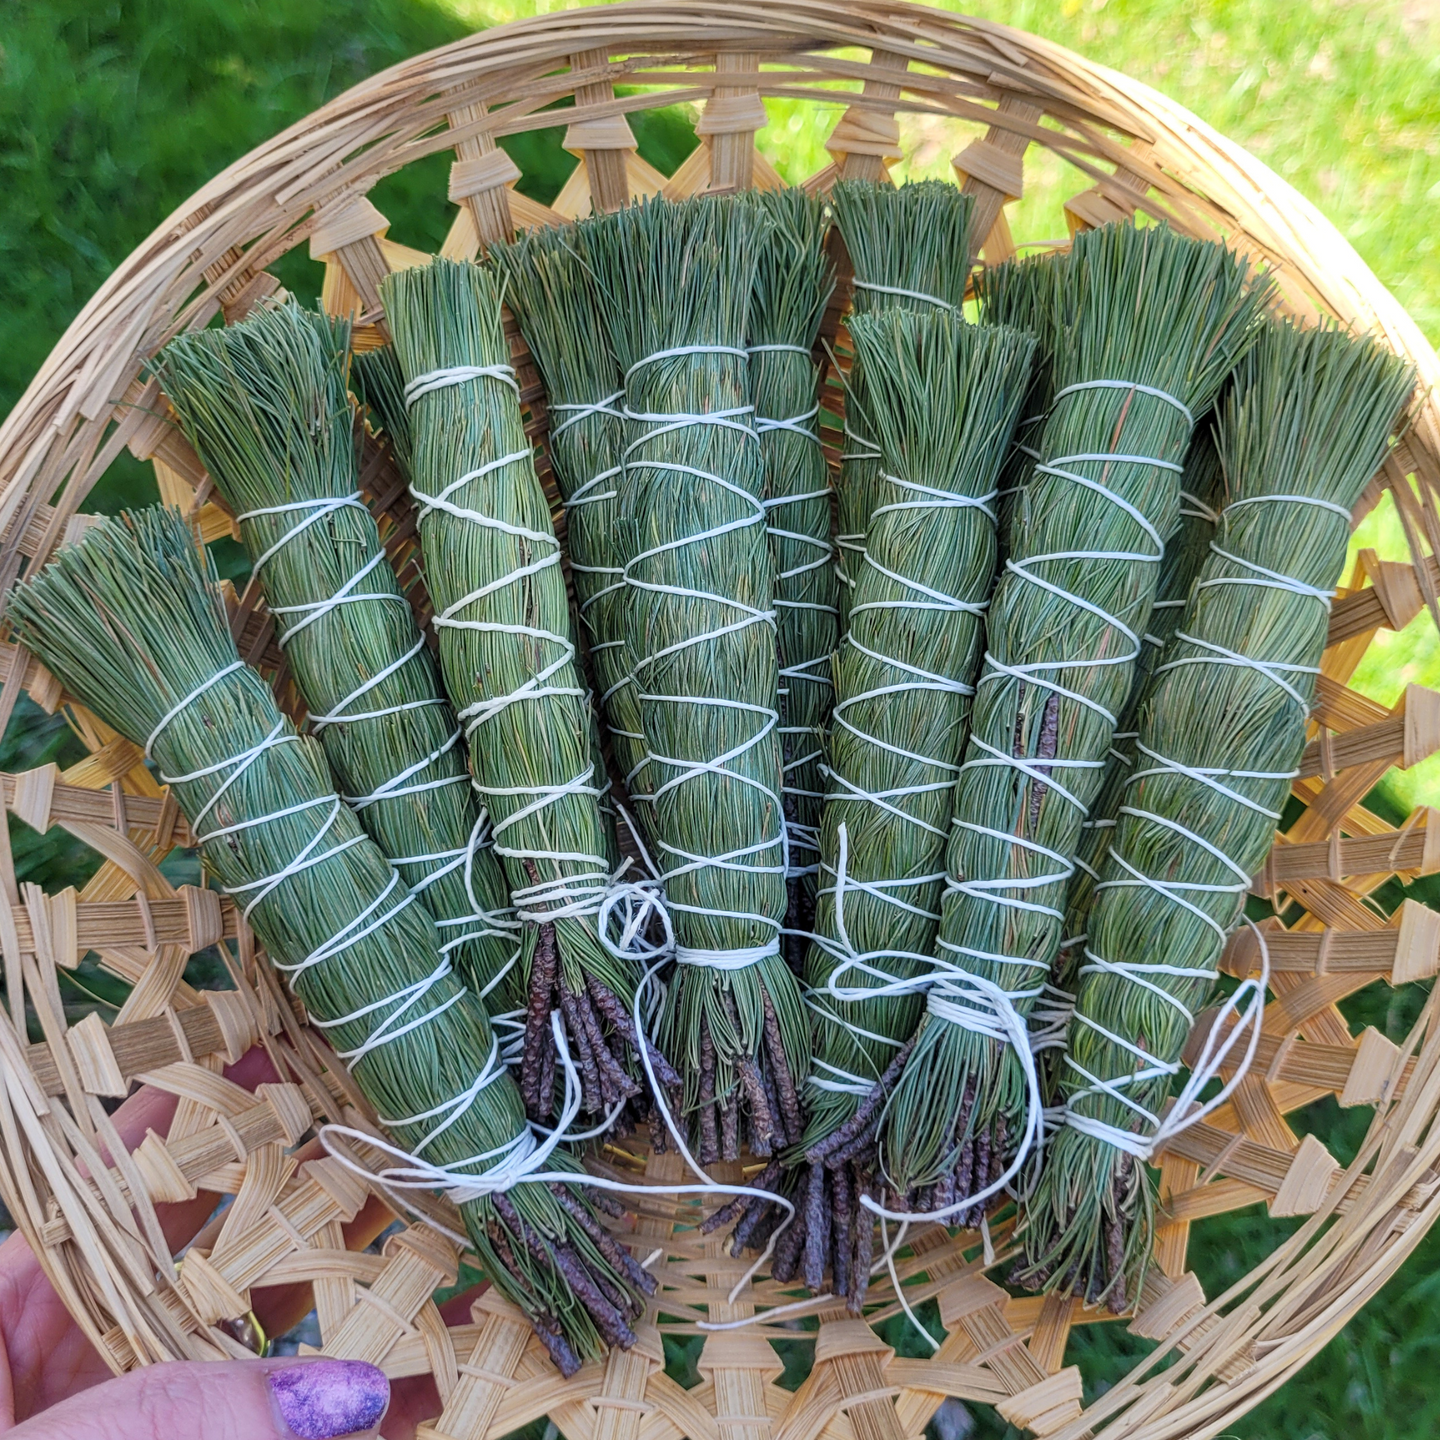 Pine needle smudge sticks